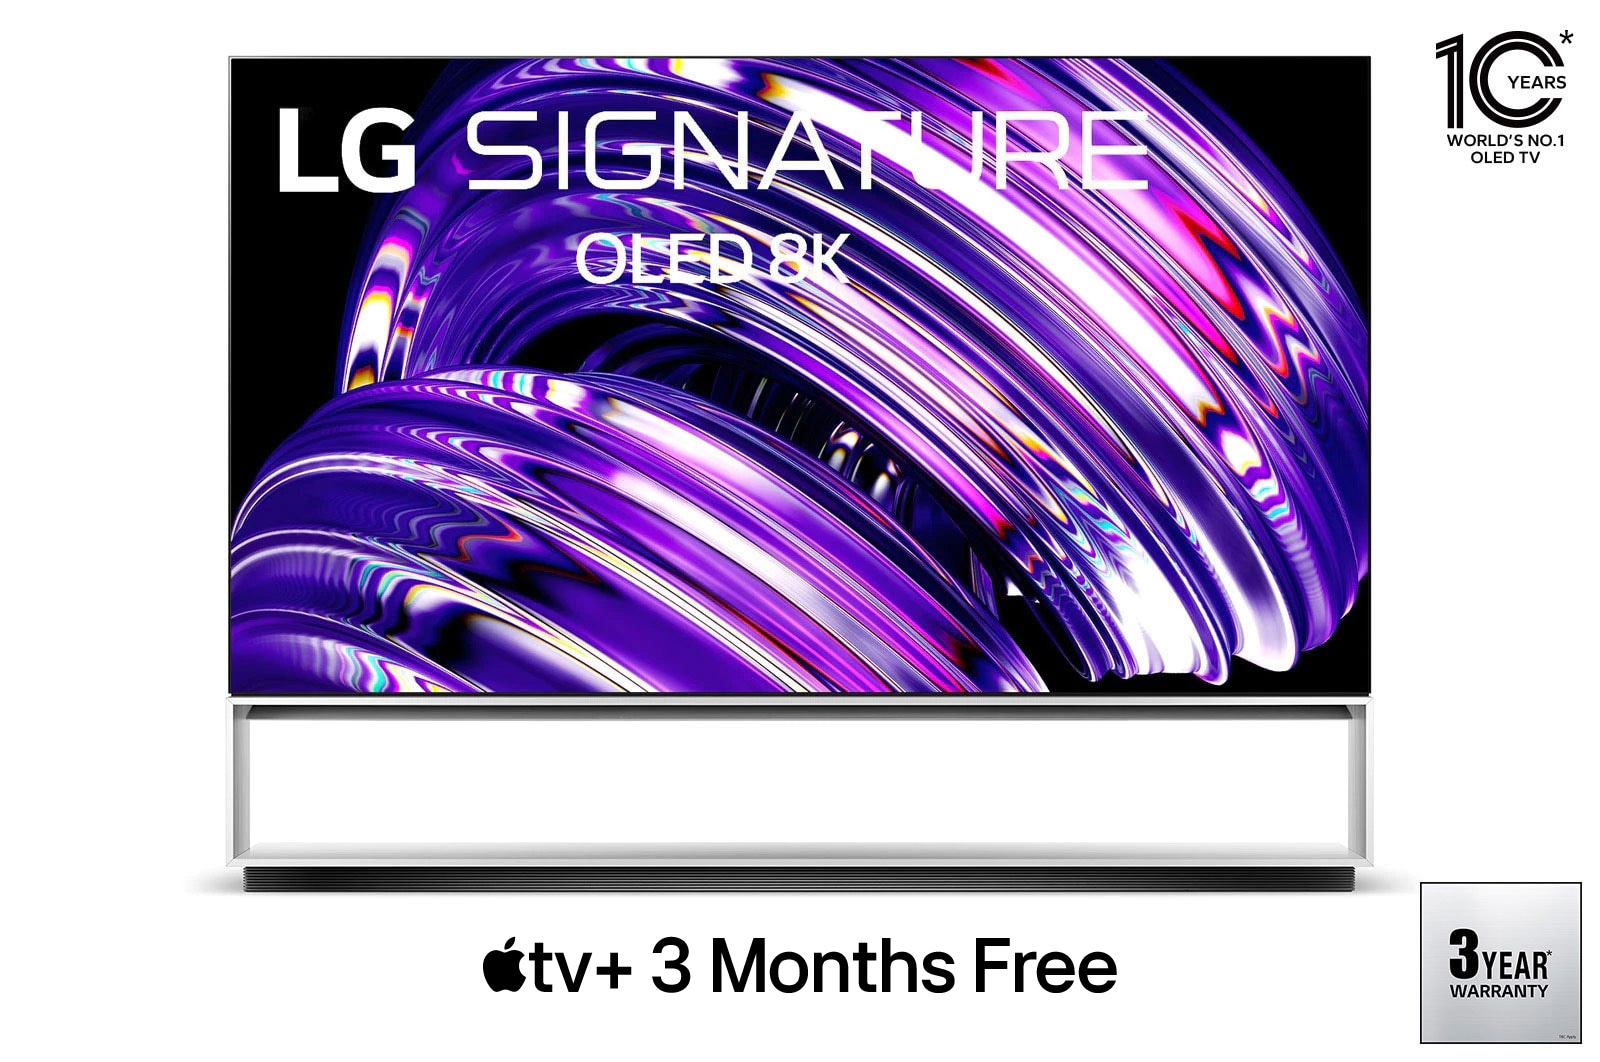 LG OLED Z2 88 (223cm) 8K Smart TV | TV Wall Design | WebOS | Dolby Vision, OLED88Z2PSA